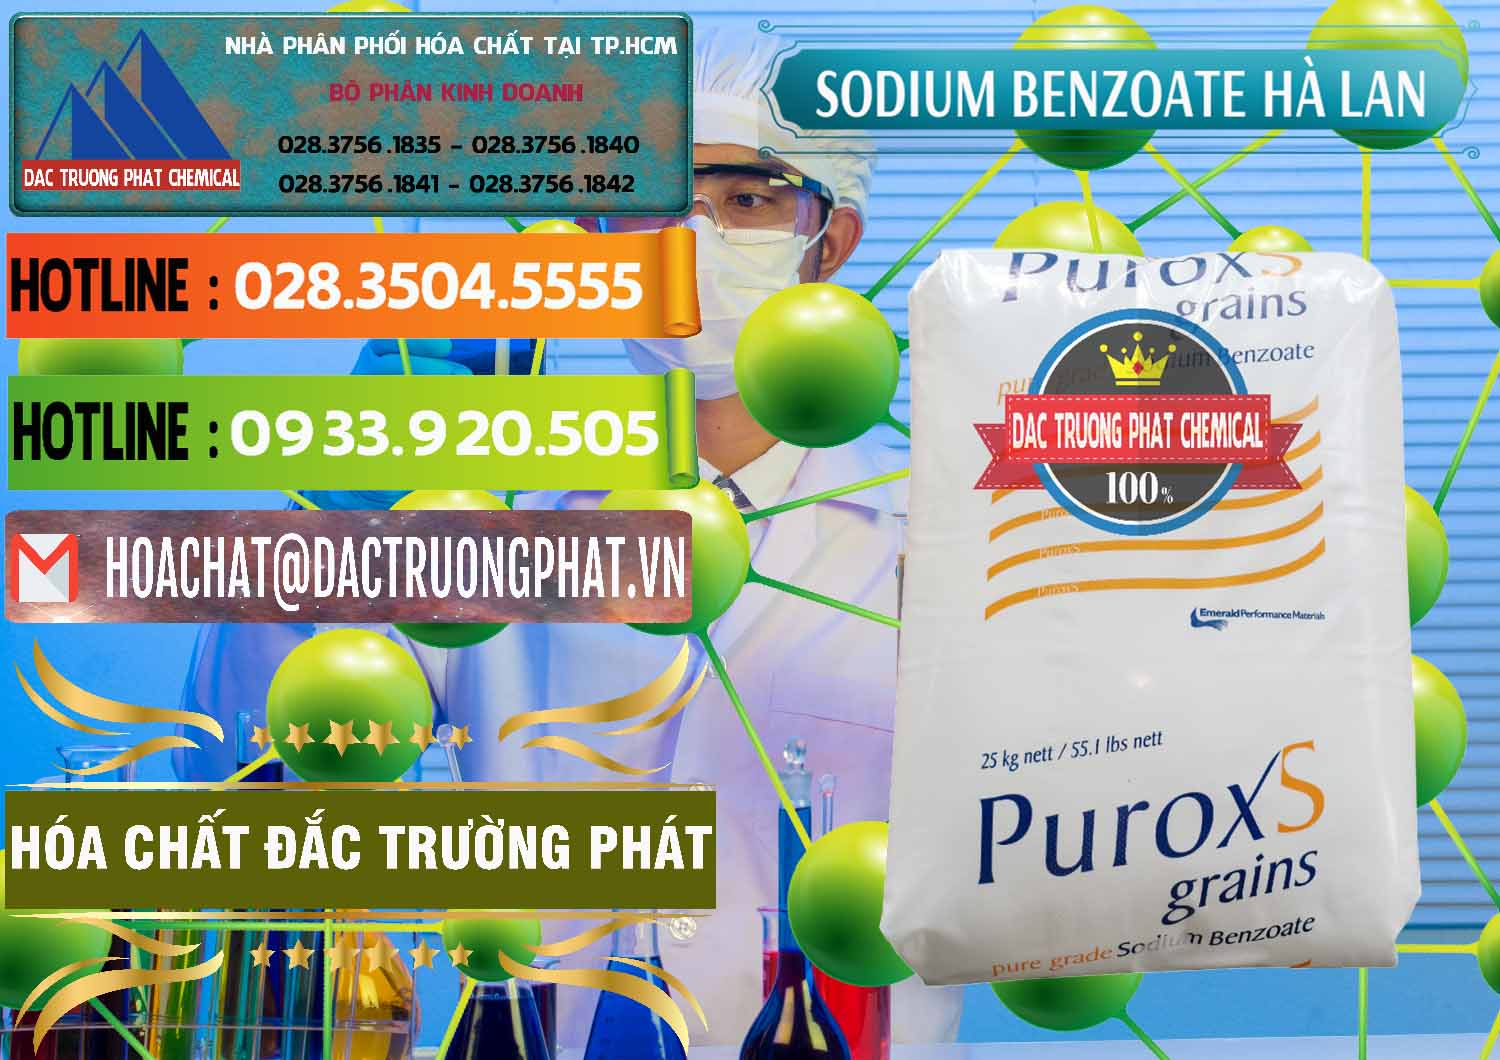 Chuyên bán _ cung cấp Sodium Benzoate - Mốc Bột Puroxs Hà Lan Netherlands - 0467 - Nhà cung cấp - phân phối hóa chất tại TP.HCM - cungcaphoachat.com.vn